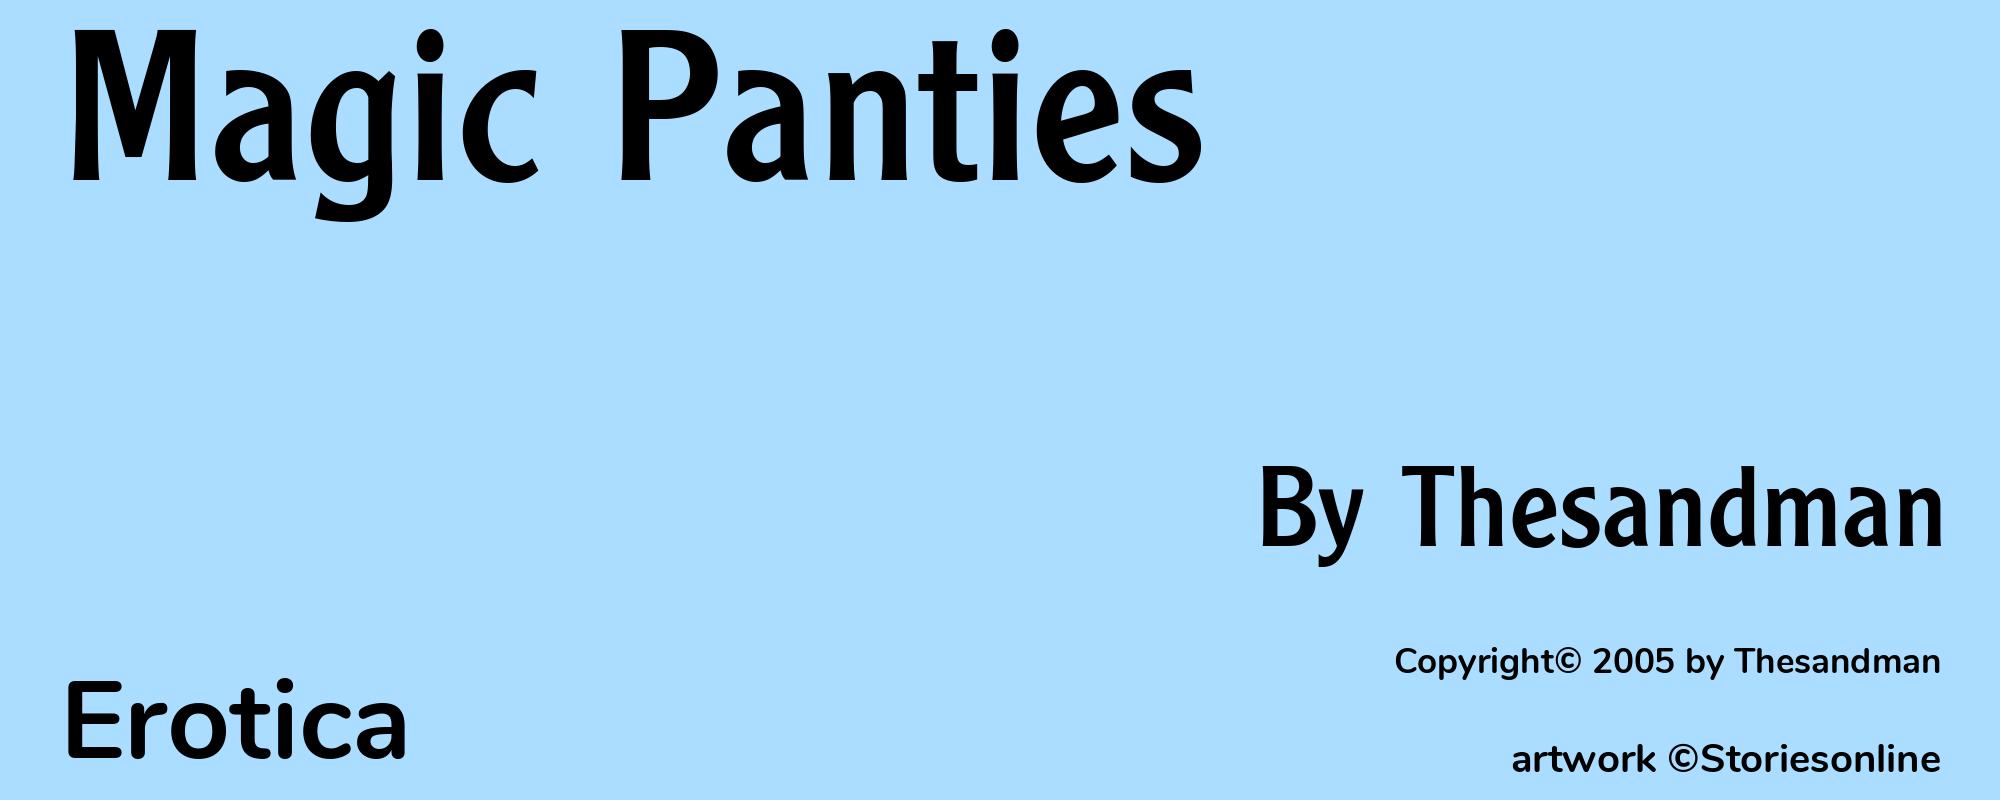 Magic Panties - Cover